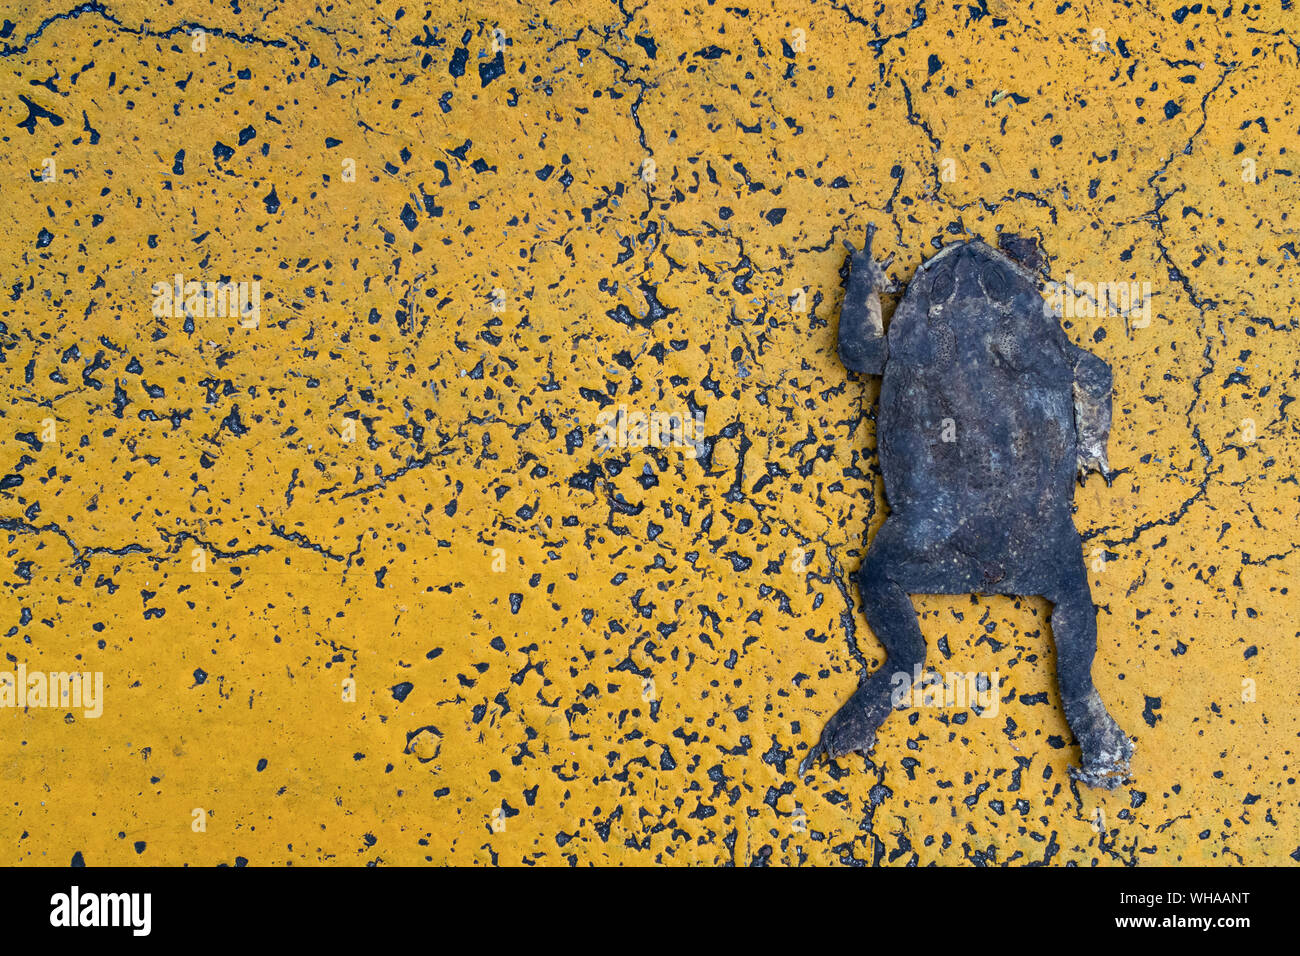 Dead Flat Kröte auf den gelben asphaltierte Straße mit dem Auto Unfall in der Stadt zerquetscht. Tiere in Gefahr, wenn die Invasion in Ihrem natürlichen Lebensraum sind. Stockfoto